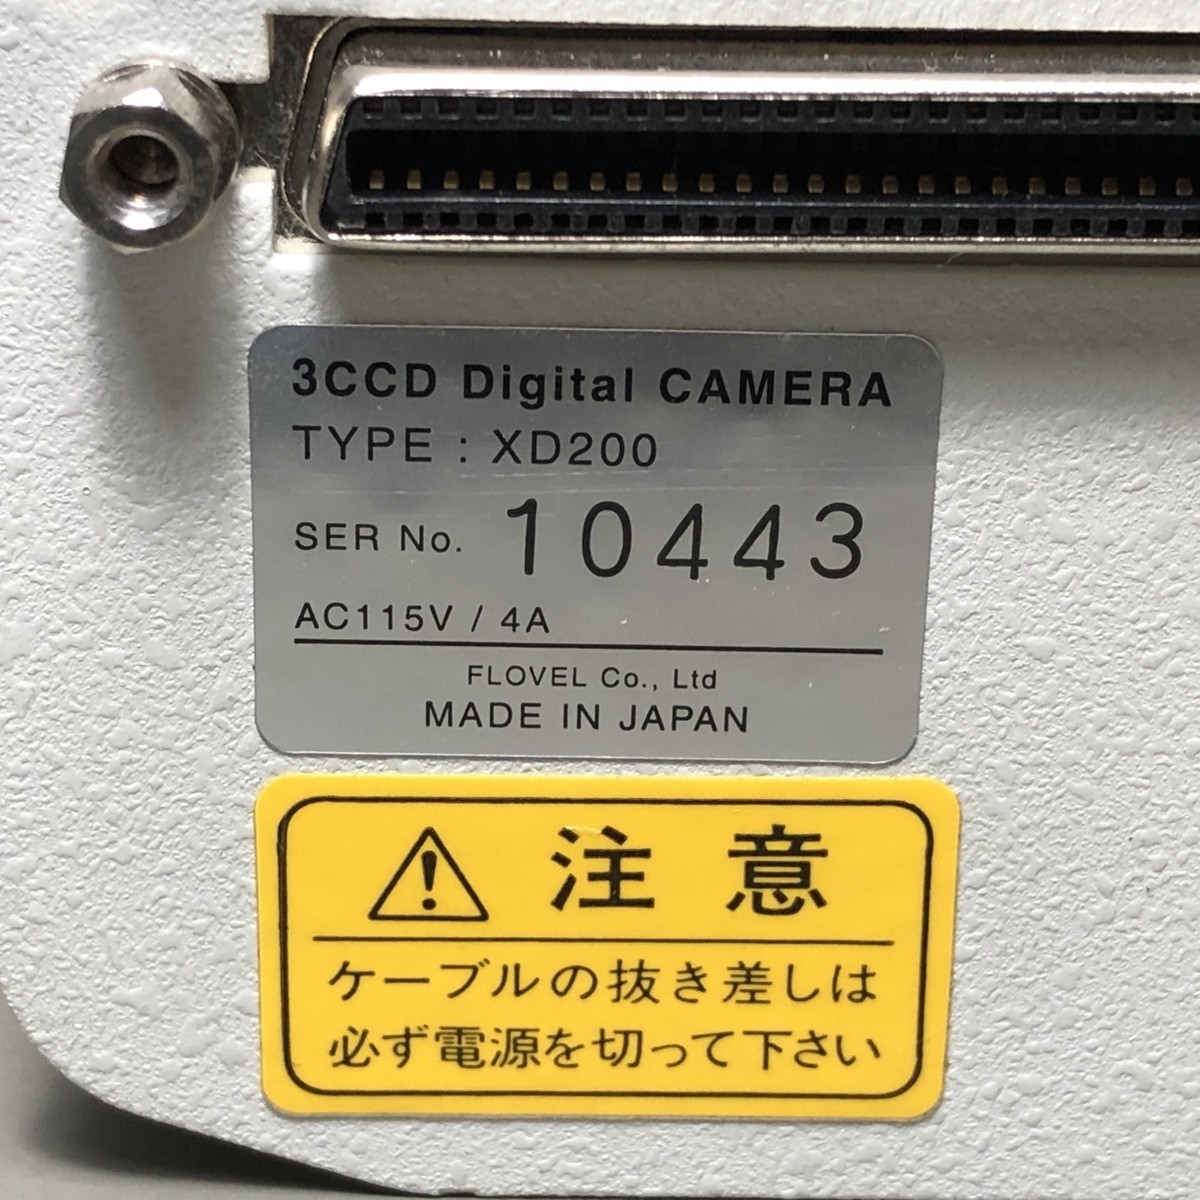 2022高い素材 DIGITAL 3CCD CAMERA 3CCDデジタルカメラ XD200 その他 - sohojapanesedining.com